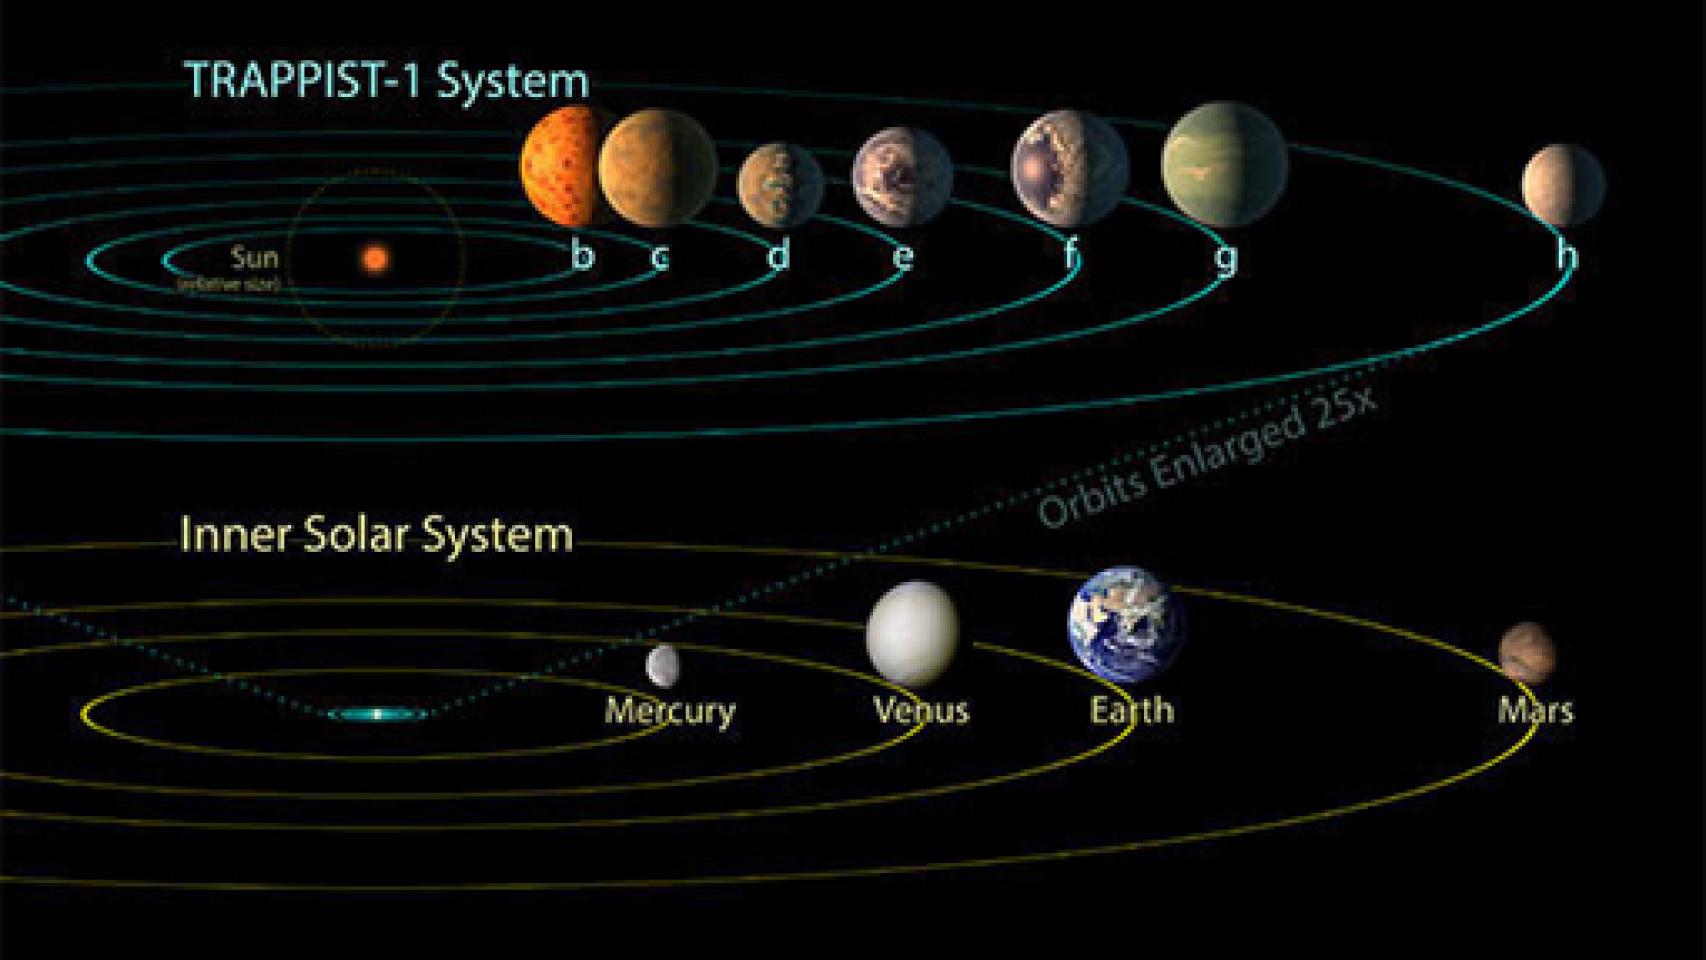 Image: ¿Tres exoplanetas con vida?